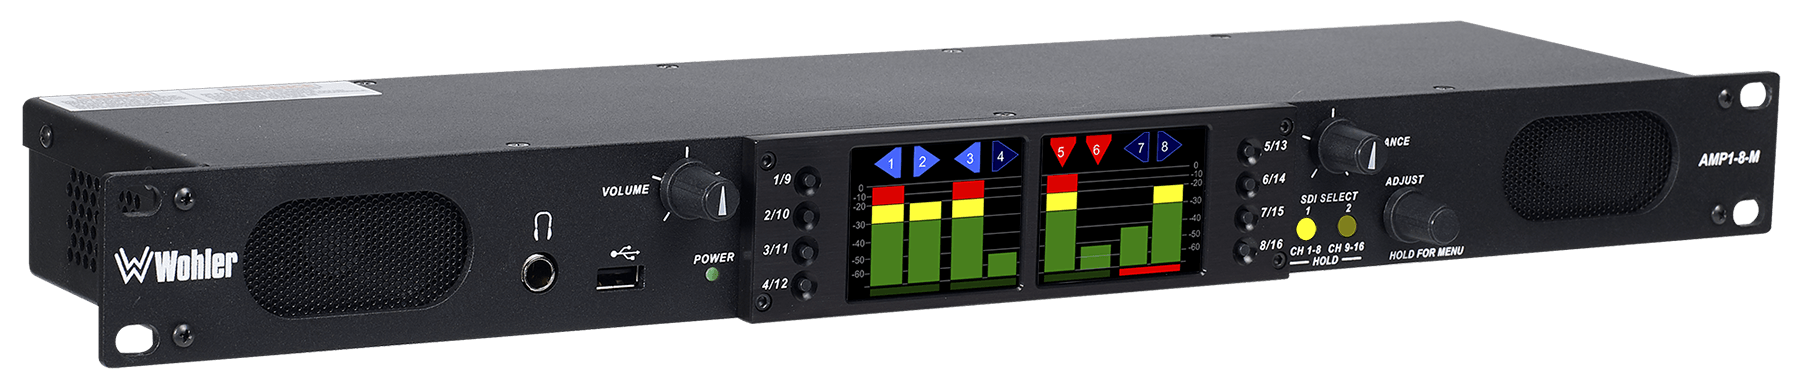 mbx3000.1 AMPIRE livelli sonori regolatore per amplificatore del mdb3000.1 